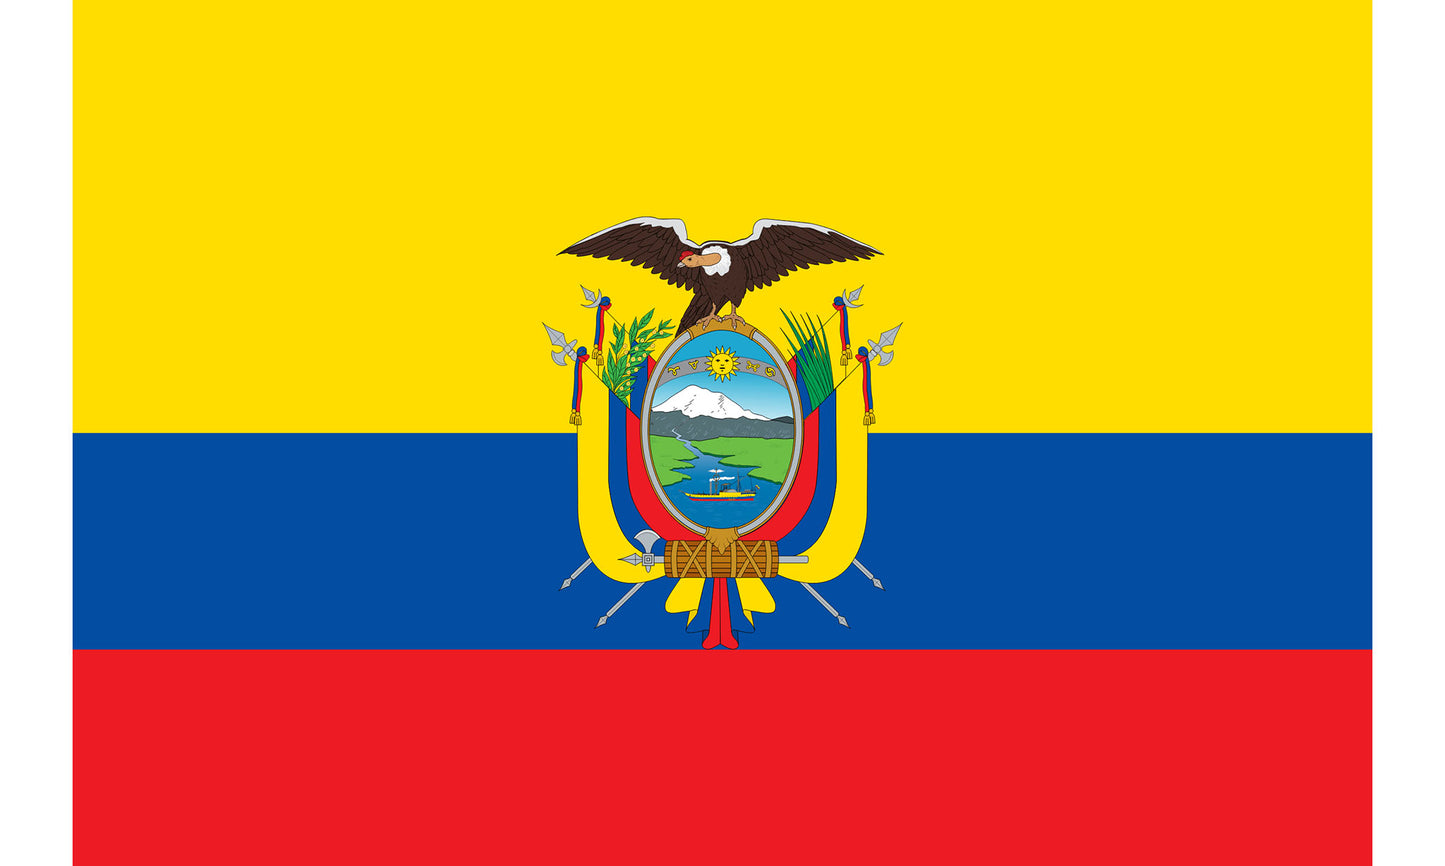 INR-ECR-15x22-2 - государственный флаг Эквадора, размер: 15х22 см, материал: атлас. Печать с двух сторон. Подставка и шток приобретаются отдельно